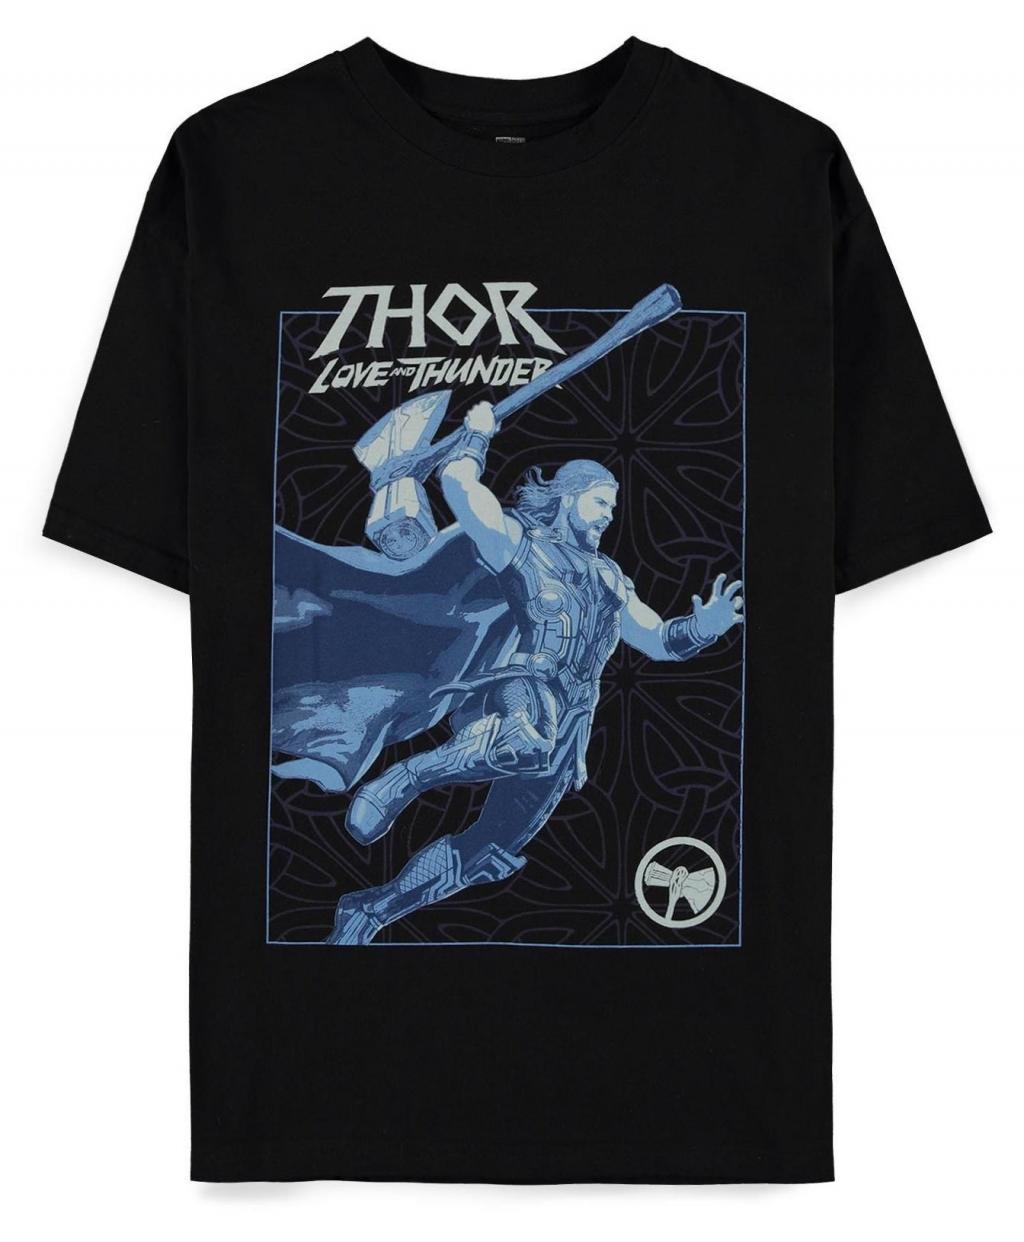 MARVEL - Thor: Love and Thunder - Oversized Women's T-Shirt (M)